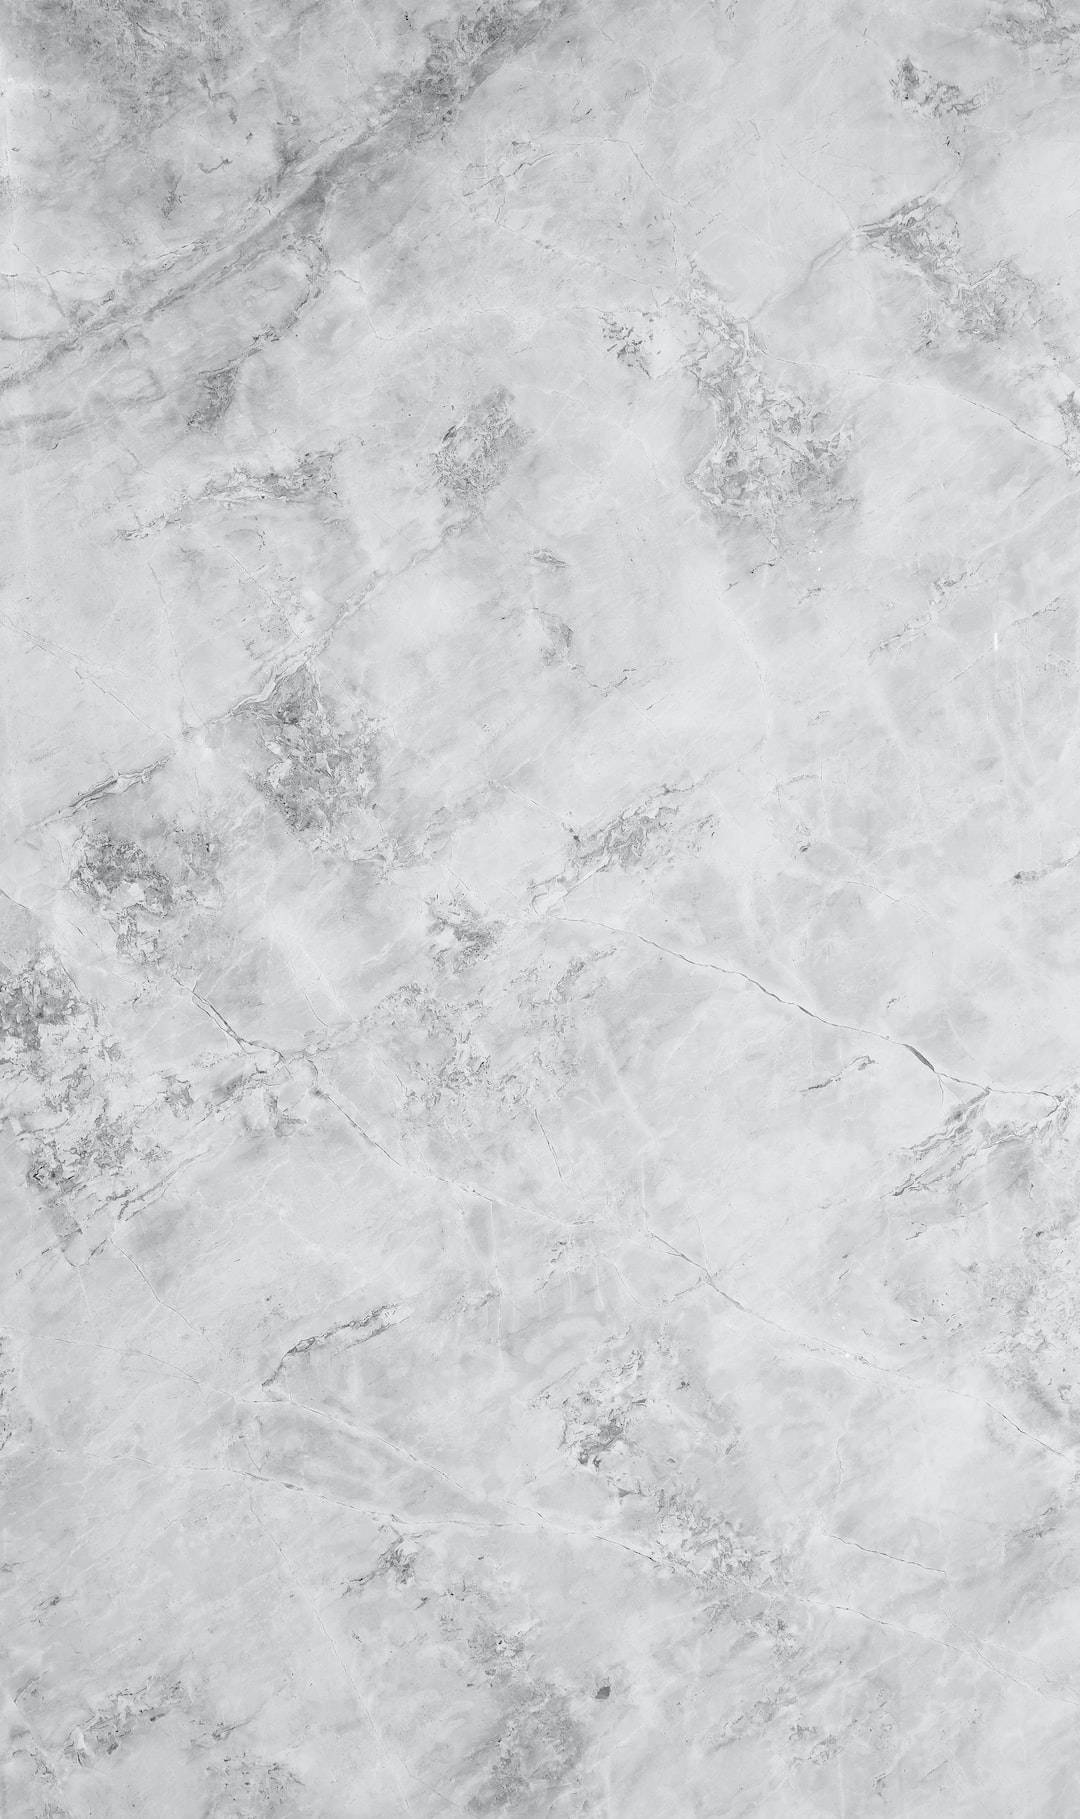 Himalaya Black White Marble Iphone Wallpaper